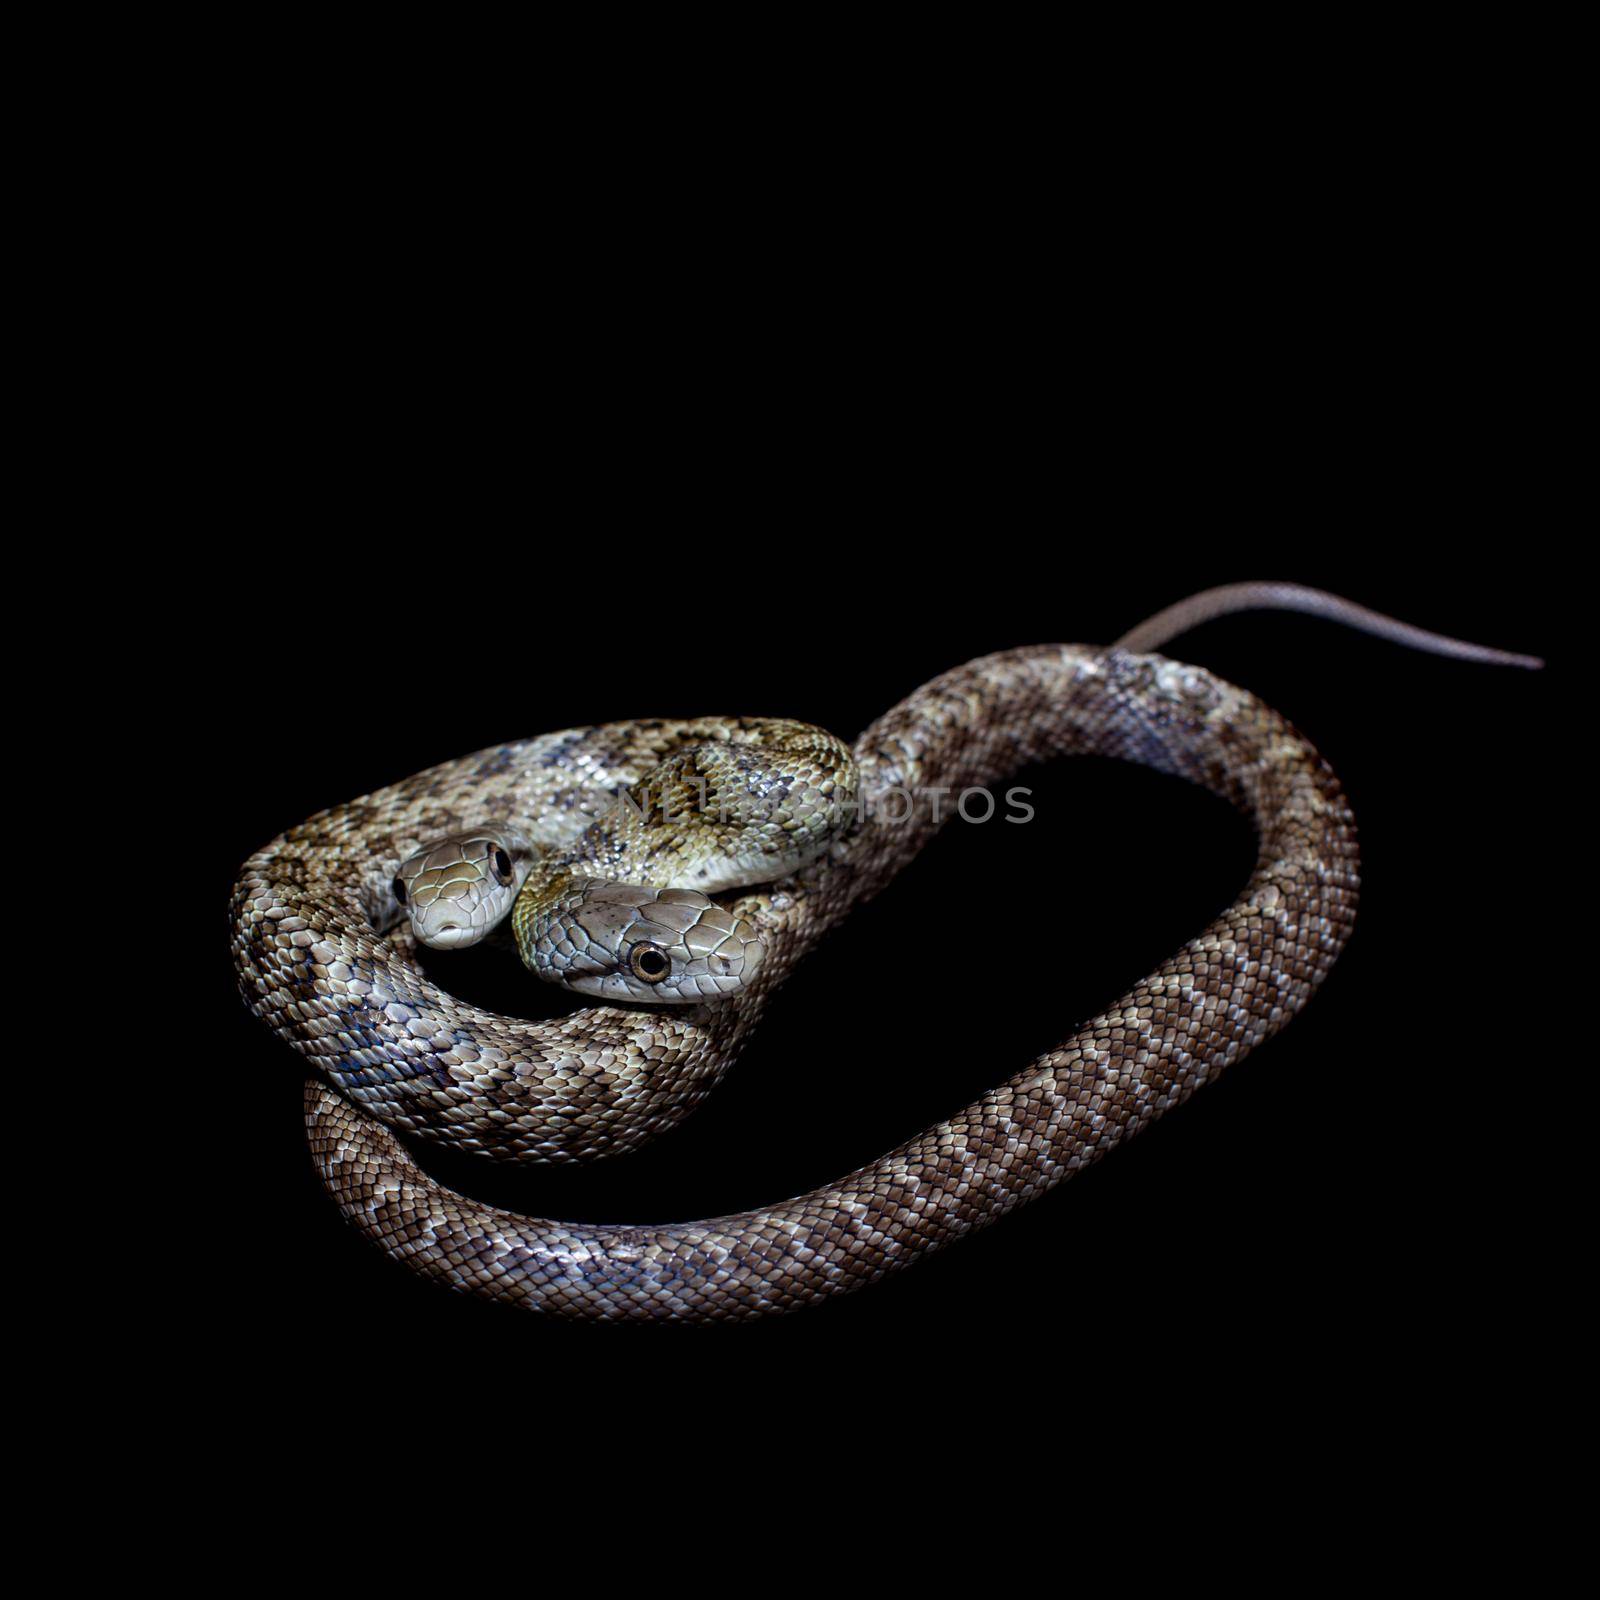 The two headed Japanese rat snake, Elaphe climacophora, isolated on black background